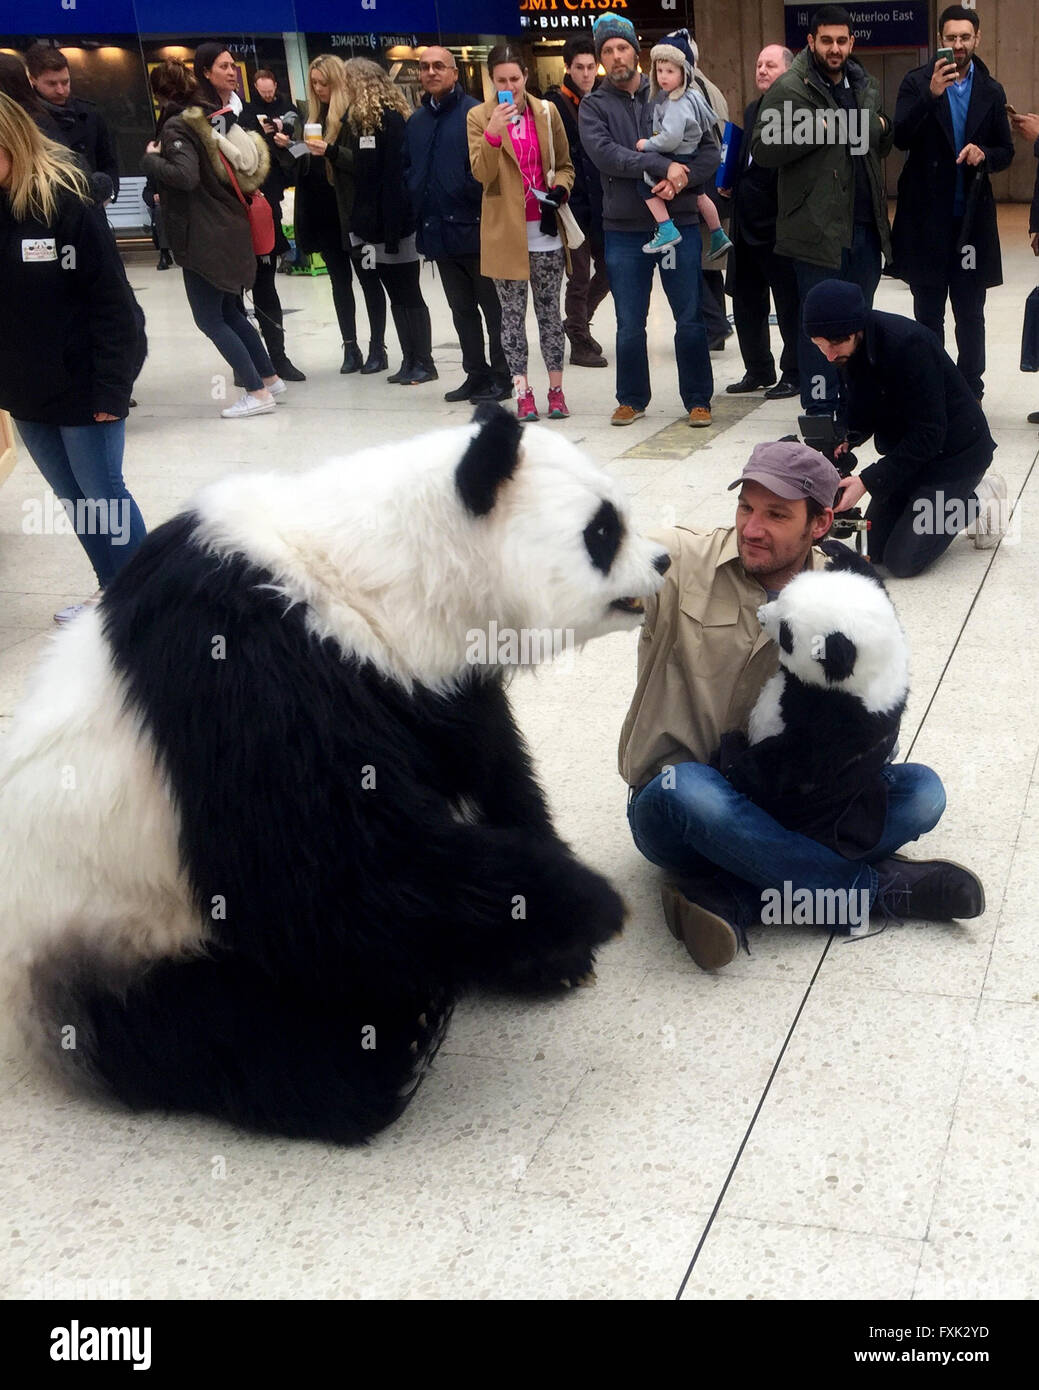 Chessington World of Adventures bringen lebensechte Animatronic Pandas zur Waterloo Station um zu versuchen zu fördern "Pandamonium" - die neue Attraktion des Freizeitparks Featuring: Atmosphäre wo: London, Vereinigtes Königreich bei: 15. März 2016 Stockfoto